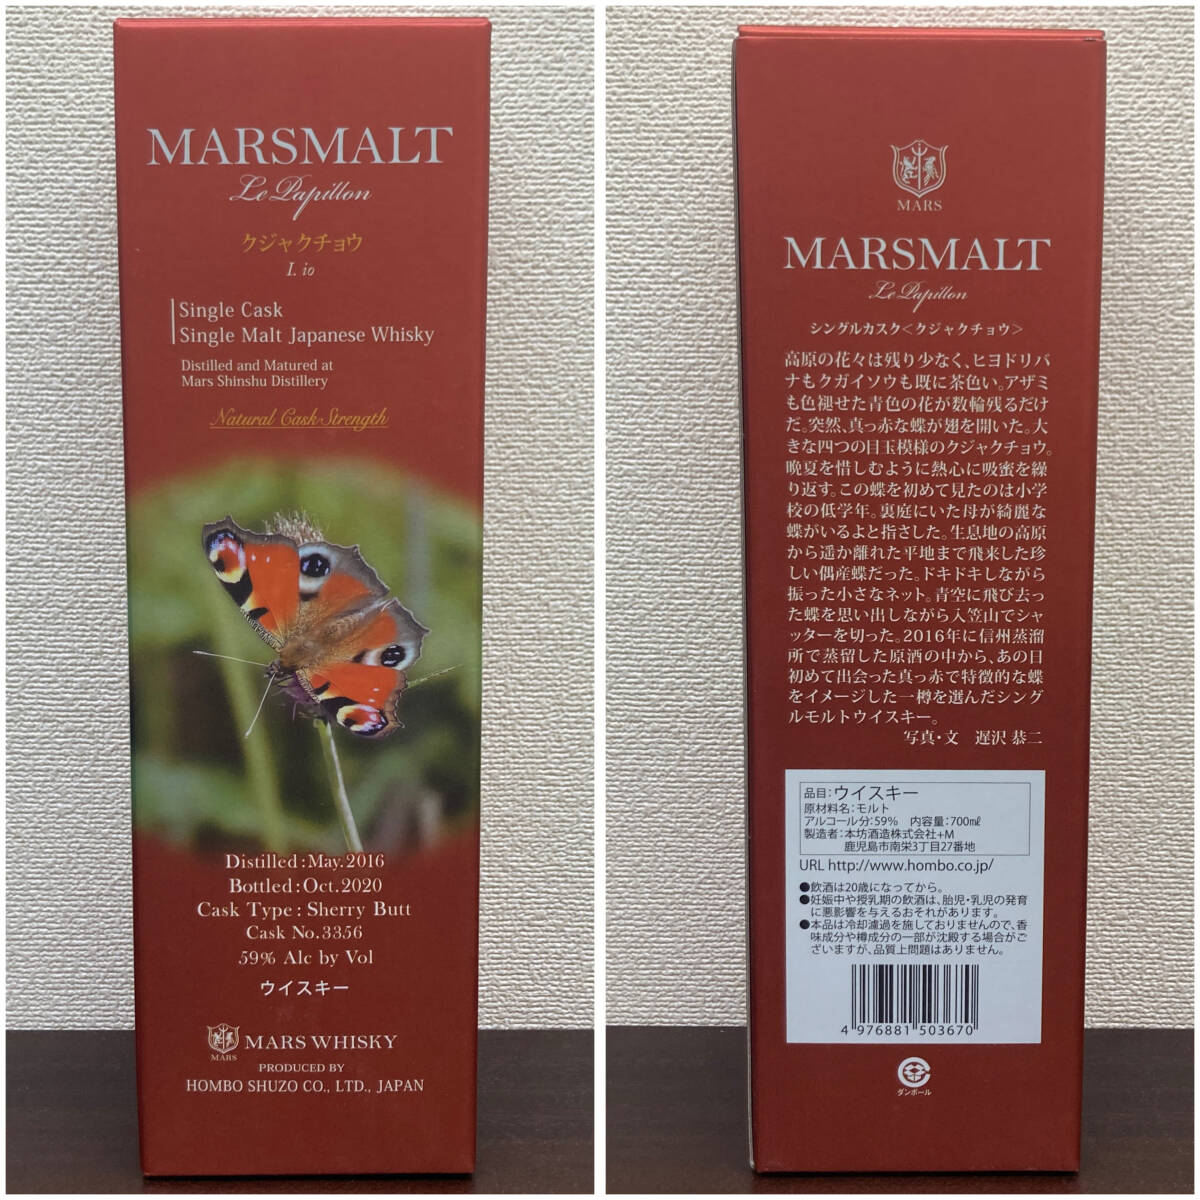 [ не . штекер ] MARSMALT Le Papillon одиночный шлем kjakchou700ml 59% maru s malt rupapiyon односолодовый виски sake 